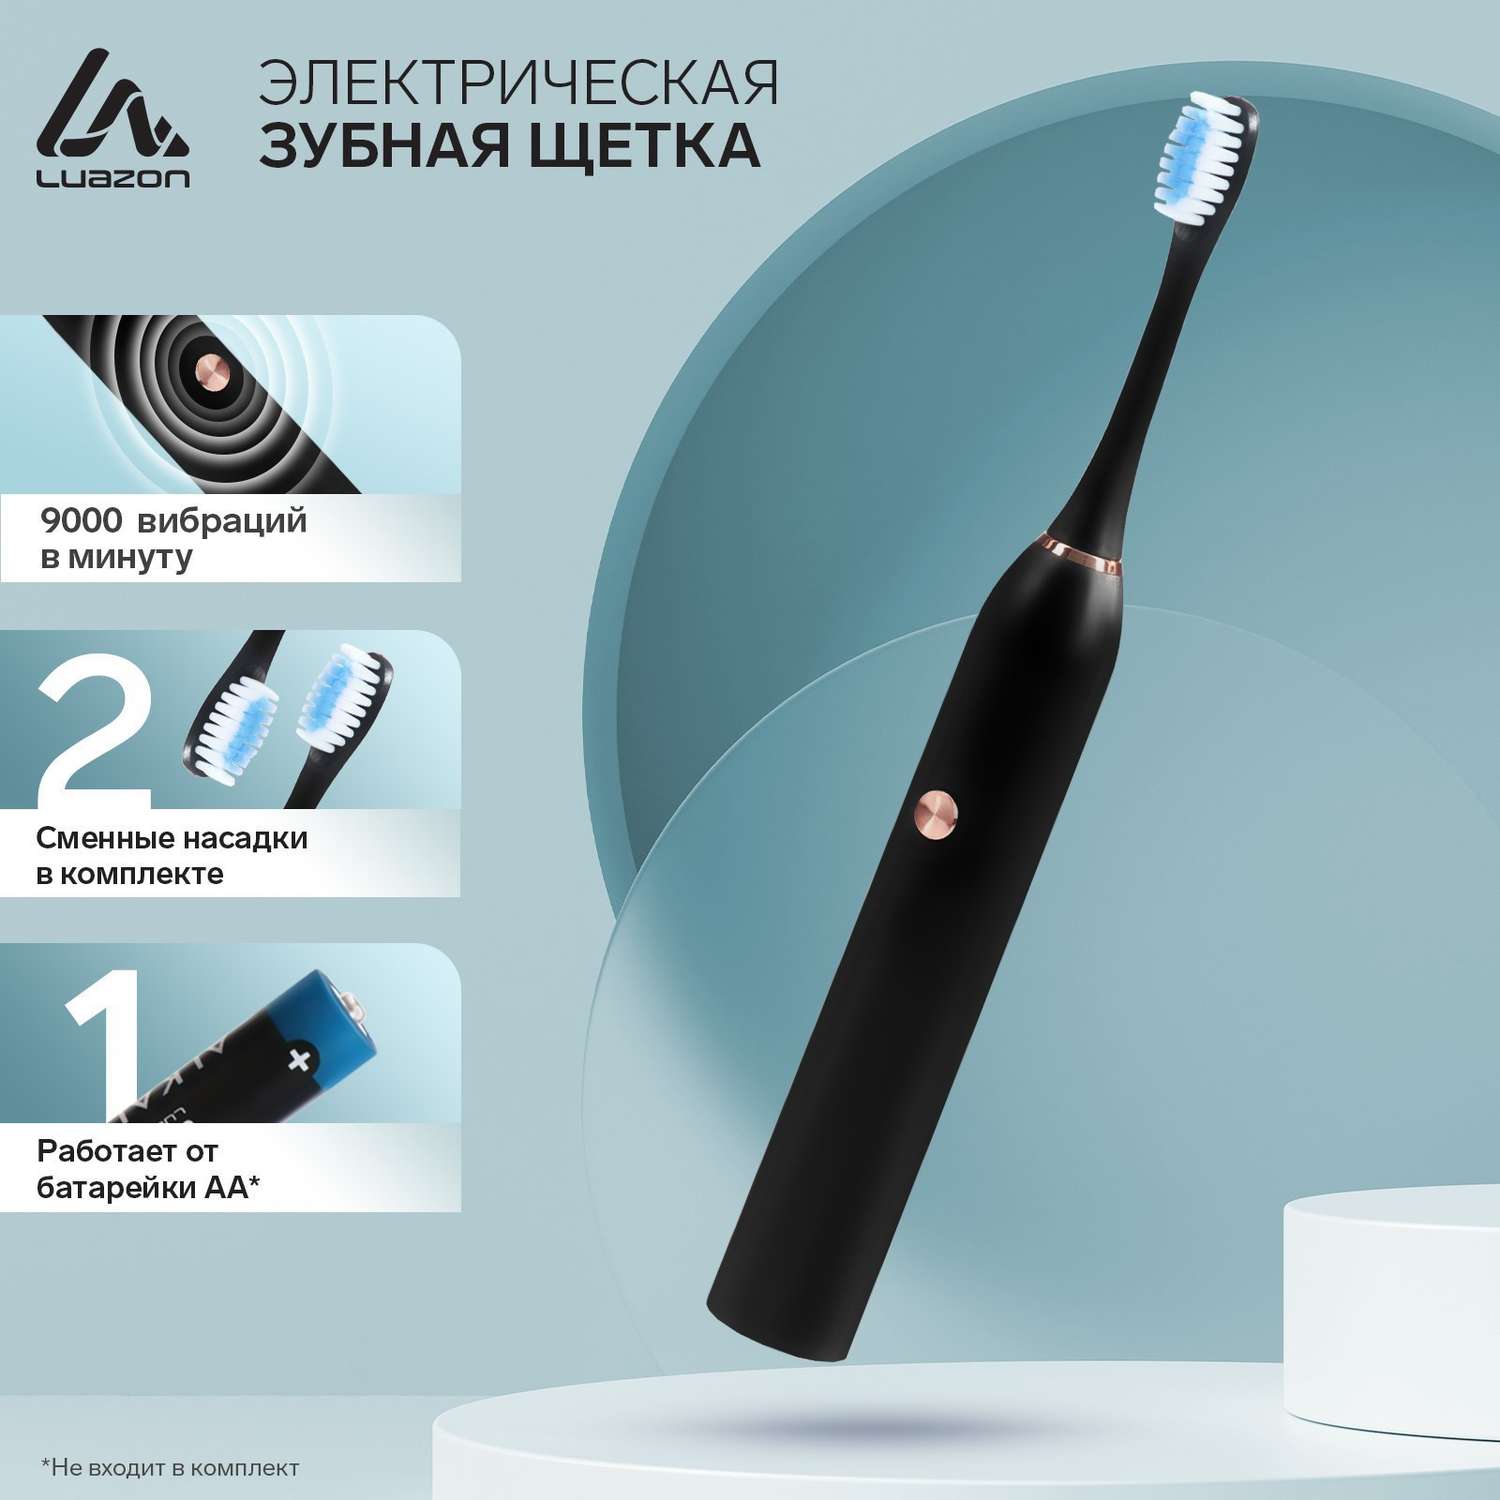 Электрическая зубная щётка Luazon Home LP004 вибрационная от 1хAA не в комплекте - фото 2